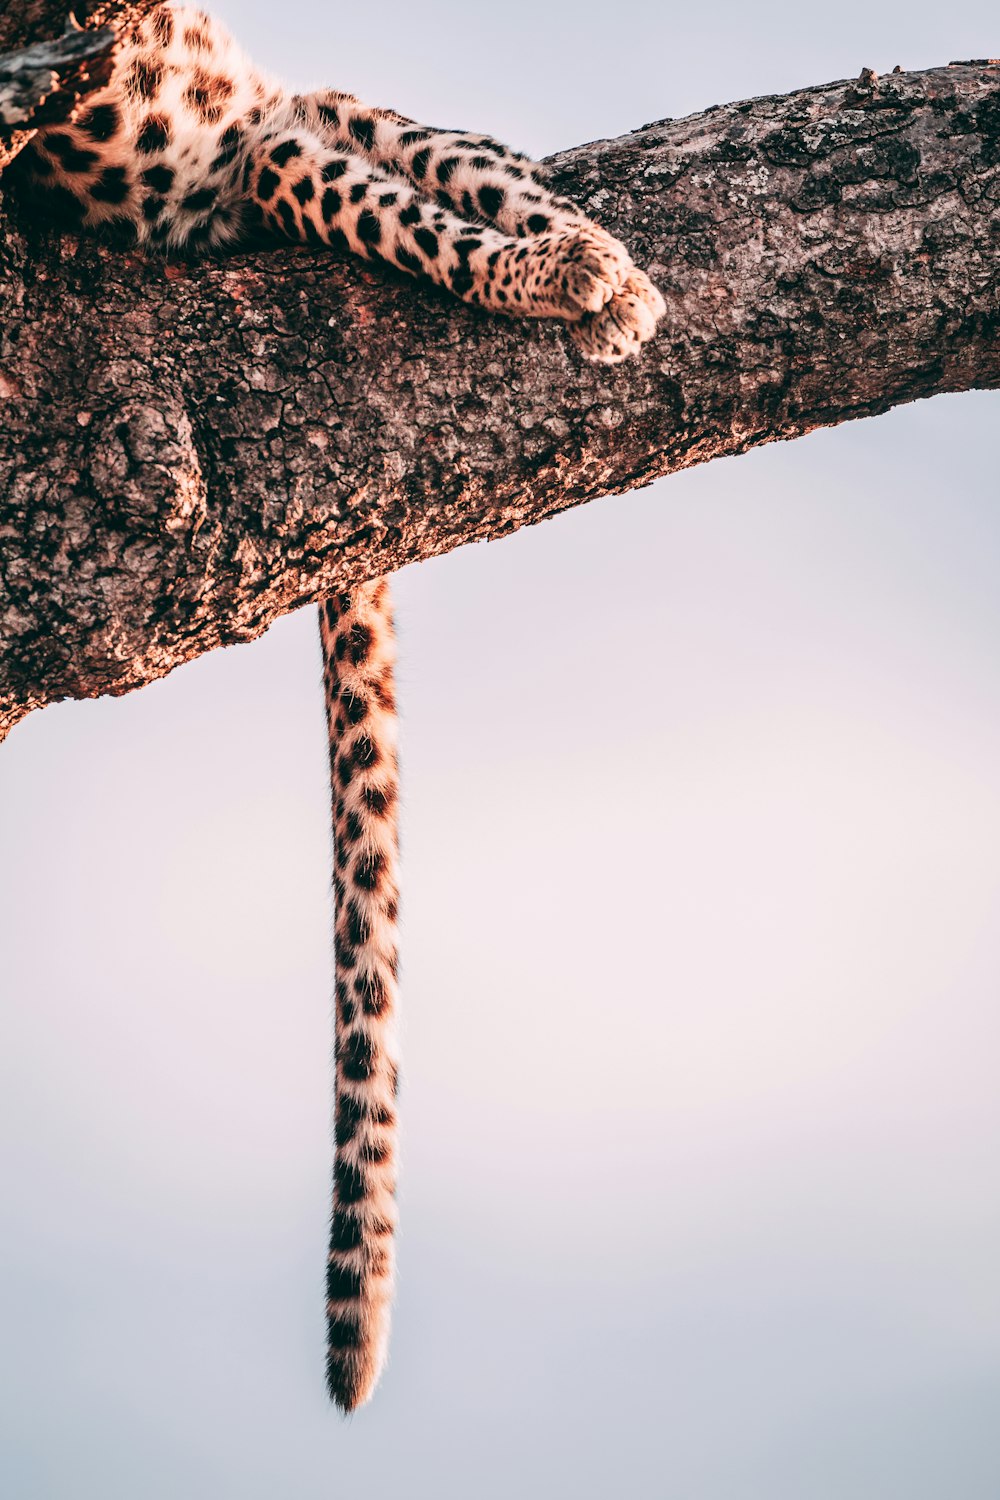 fotografia ravvicinata leopardo sull'albero